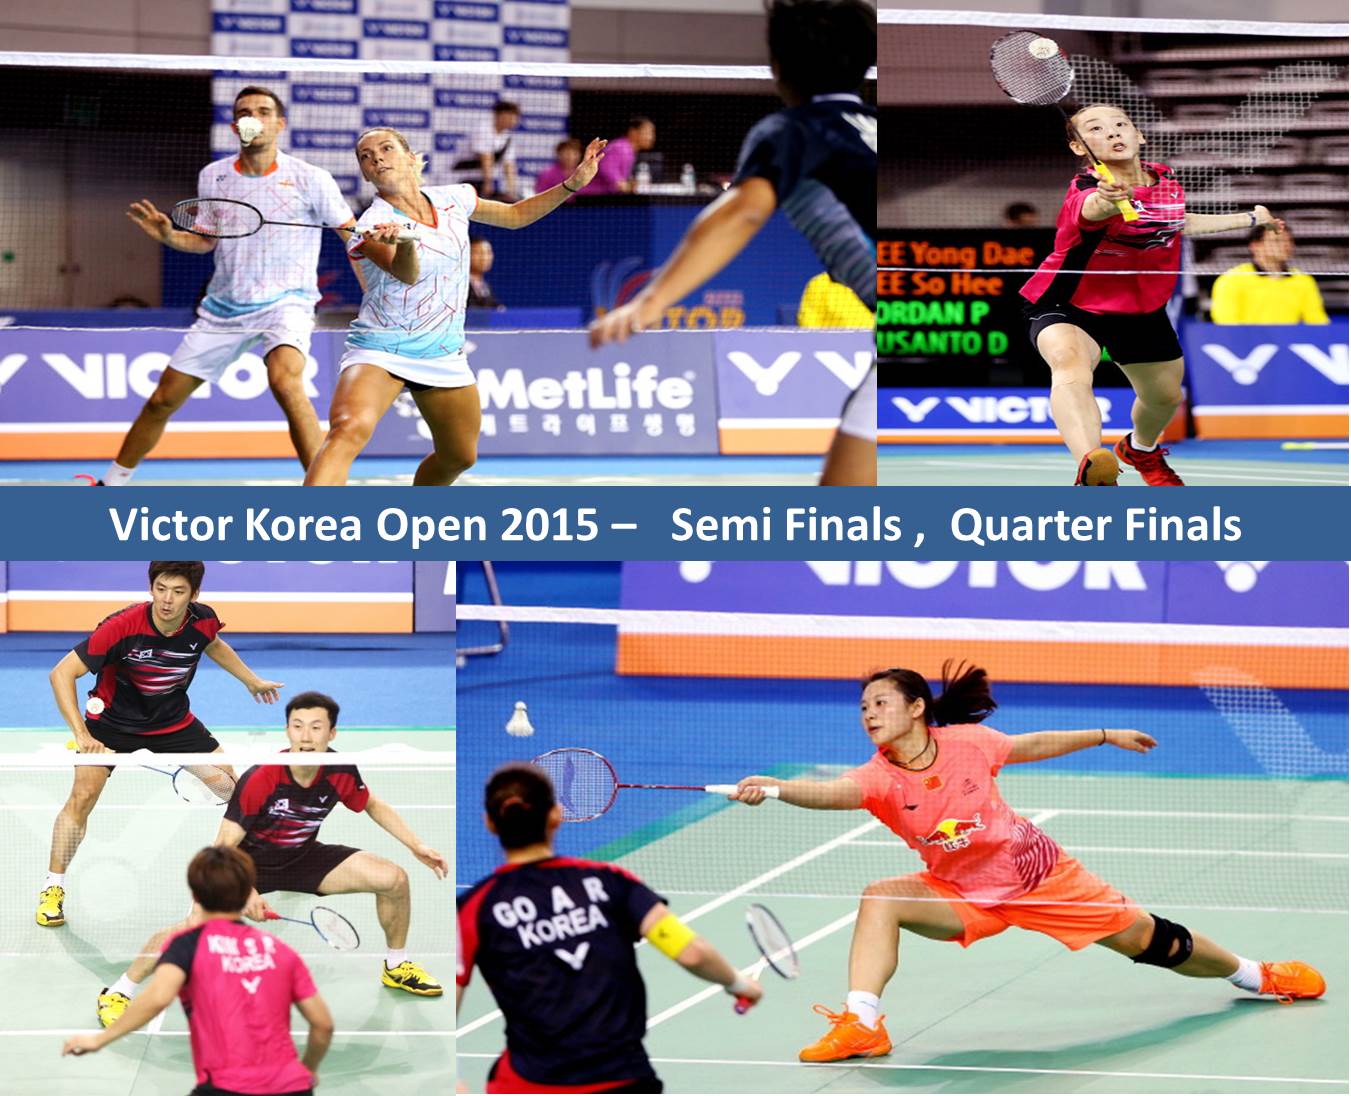 دانلود نیمه نهایی و یک چهارم نهایی مسابقات بدمیتون Victor Korea Open 2015 